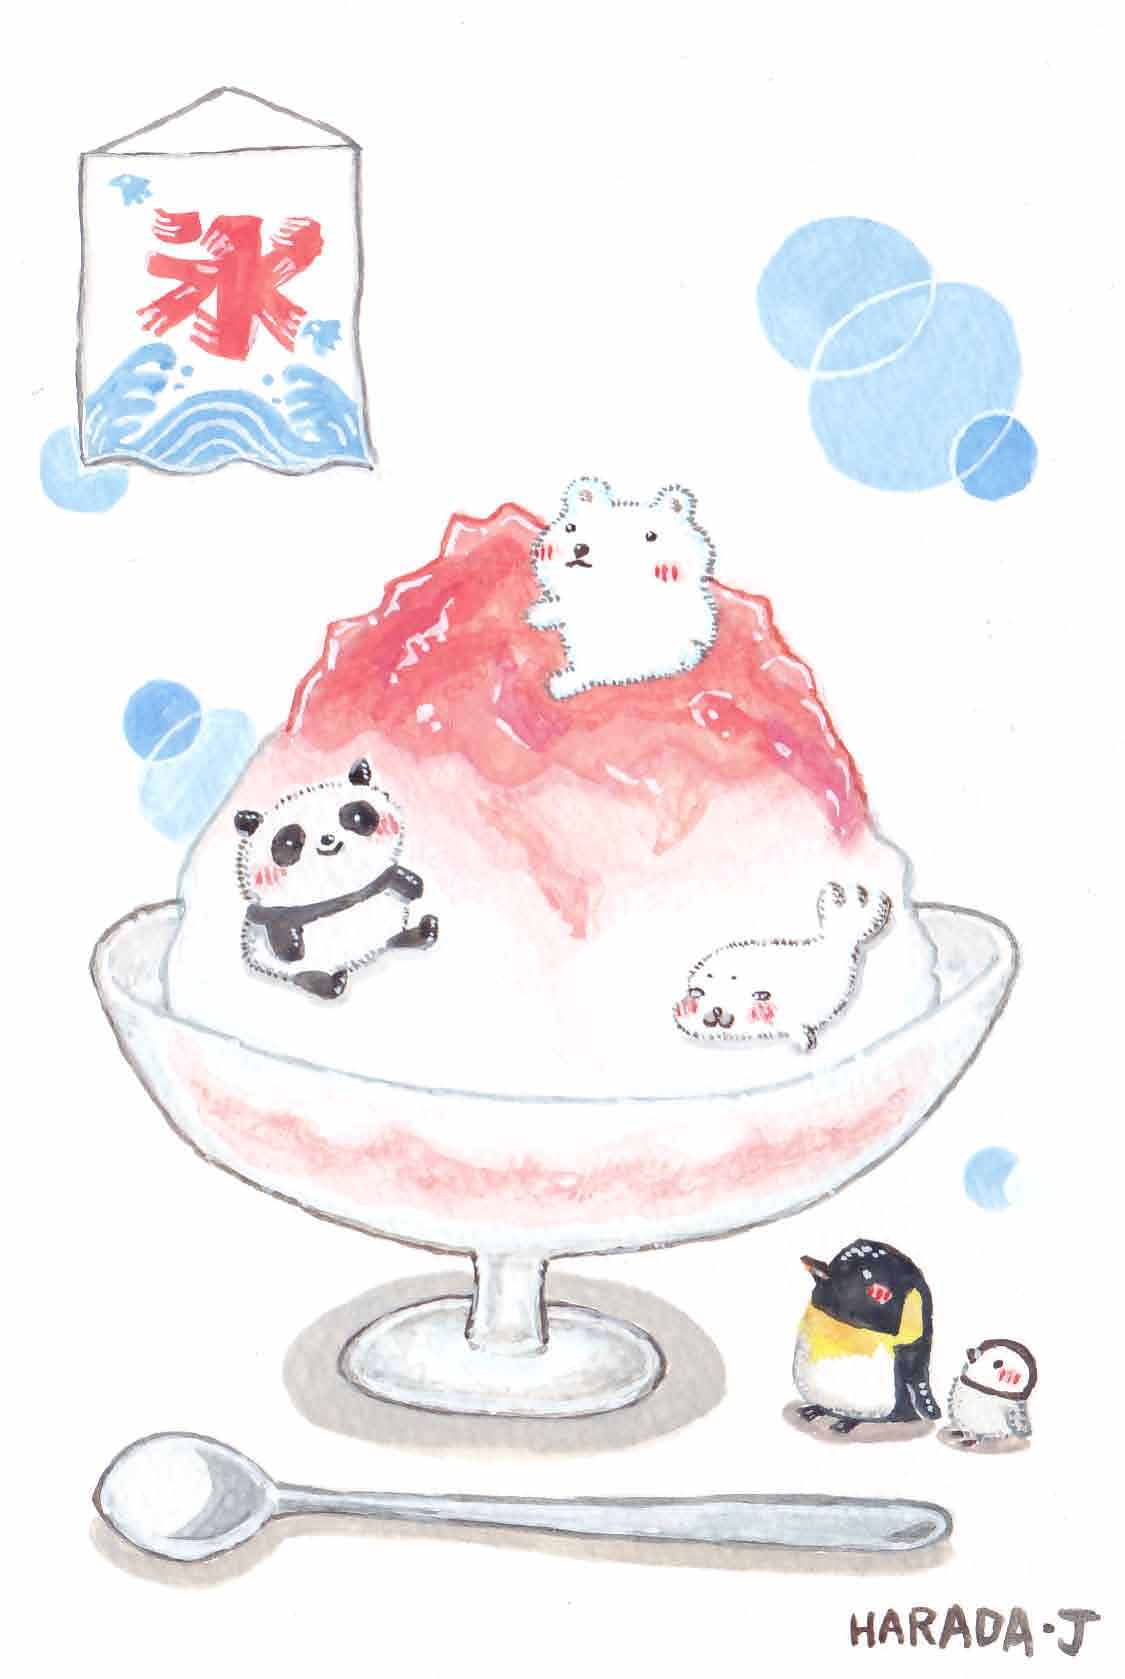 Harada J カレンダー作成中 完成しました イラスト かき氷の中にすむパンダとシロクマとアザラシを見上げるペンギンの親子 です ご覧ください O 丿 T Co K5hsy9cg35 Twitter